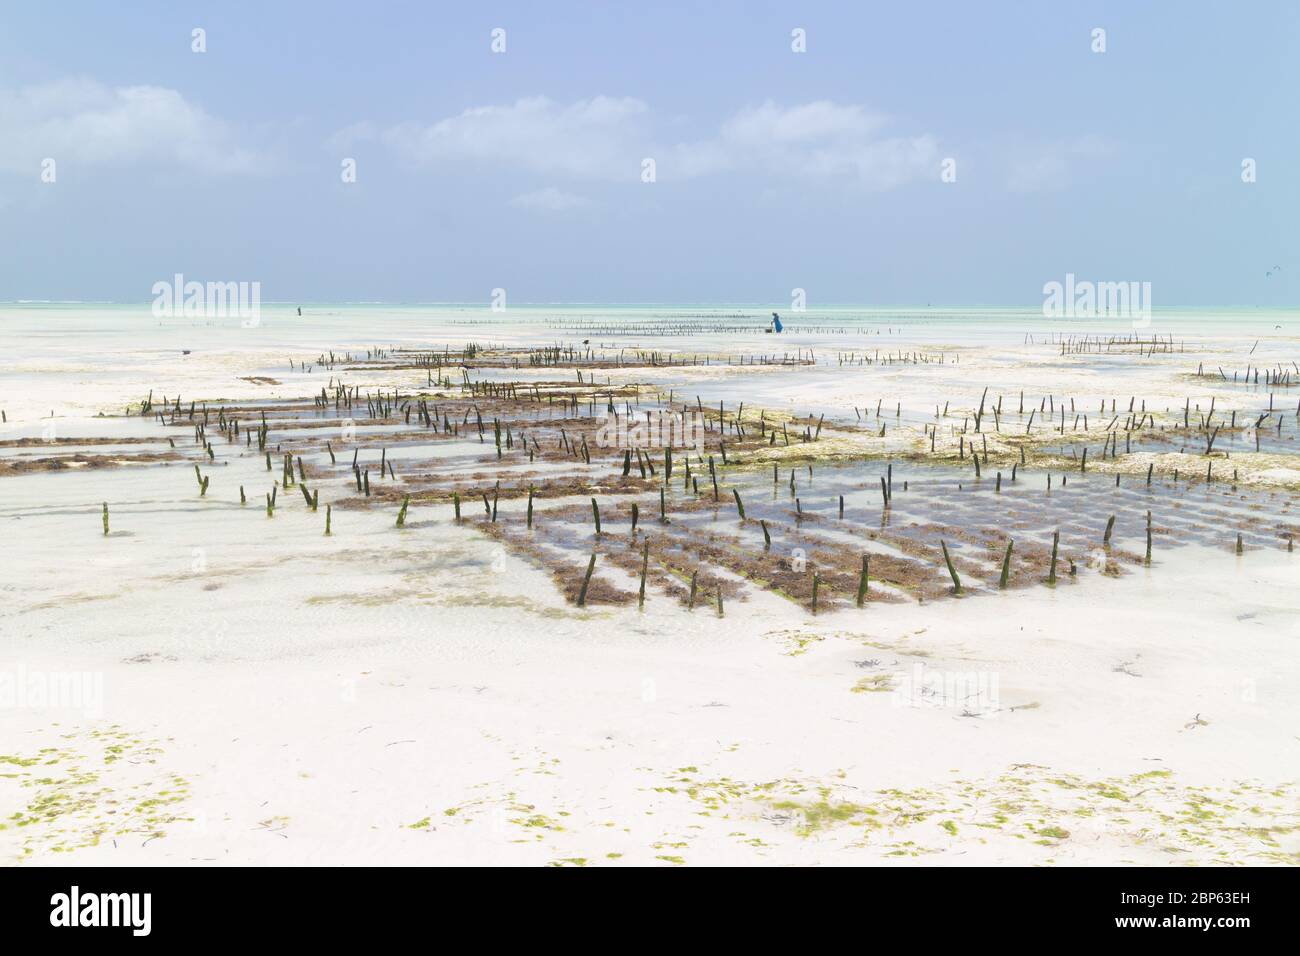 Rows of seaweed on a seaweed farm, Paje, Zanzibar island, Tanzania Stock Photo